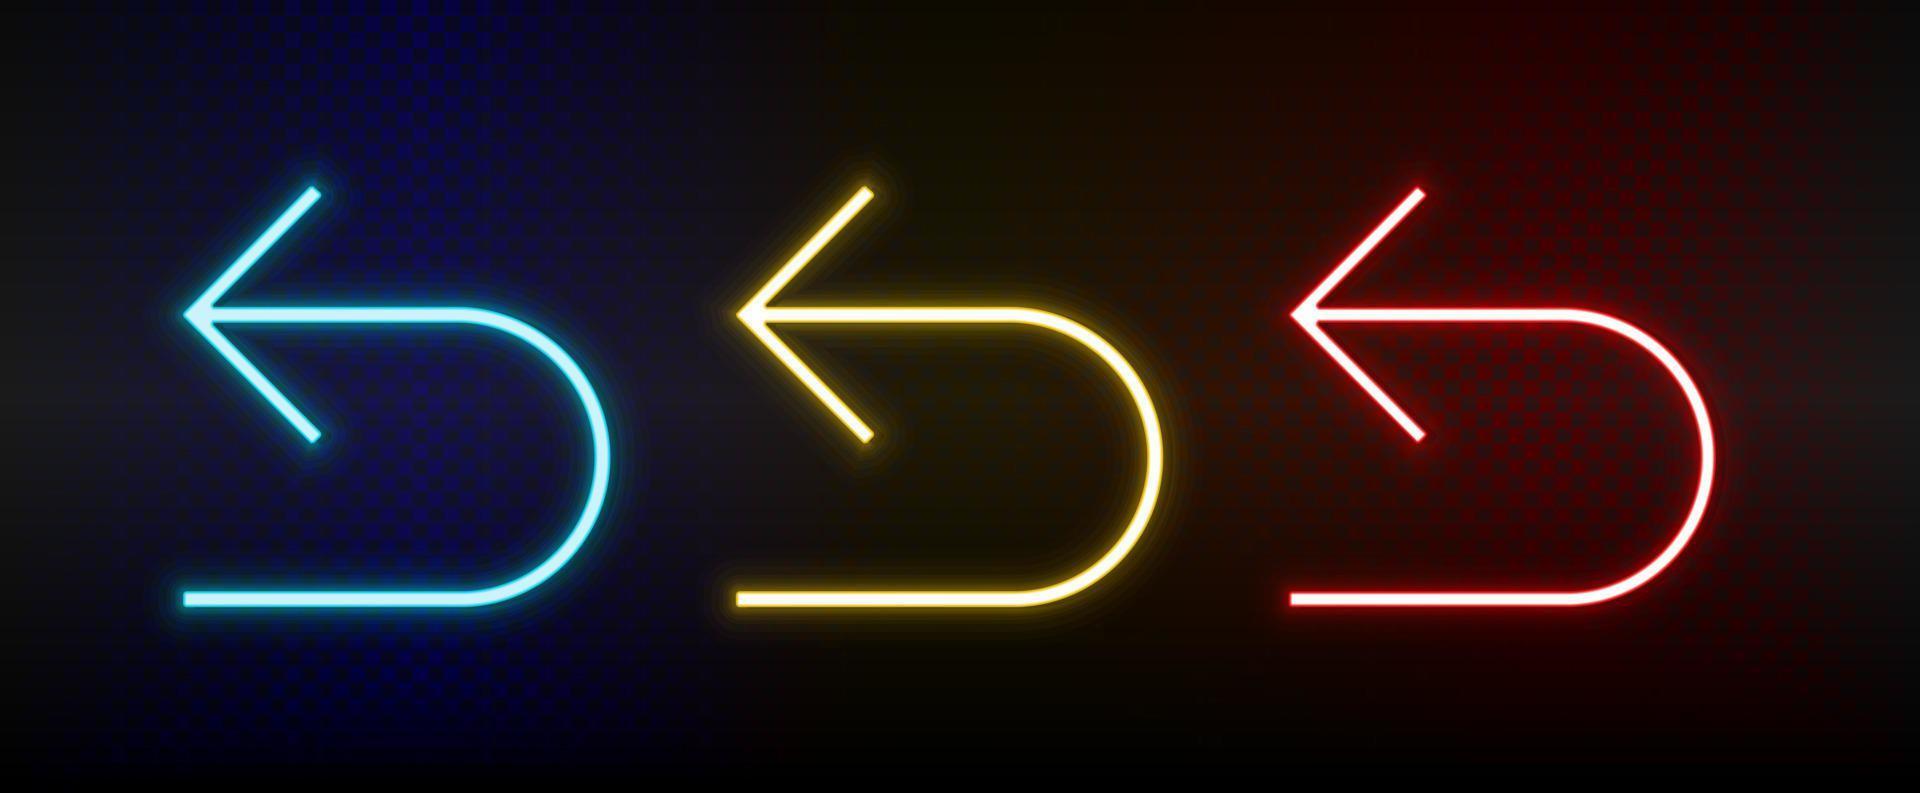 Neon-Symbole. ui-Pfeil. Satz von roten, blauen, gelben Neonvektorsymbolen auf dunklem Hintergrund vektor